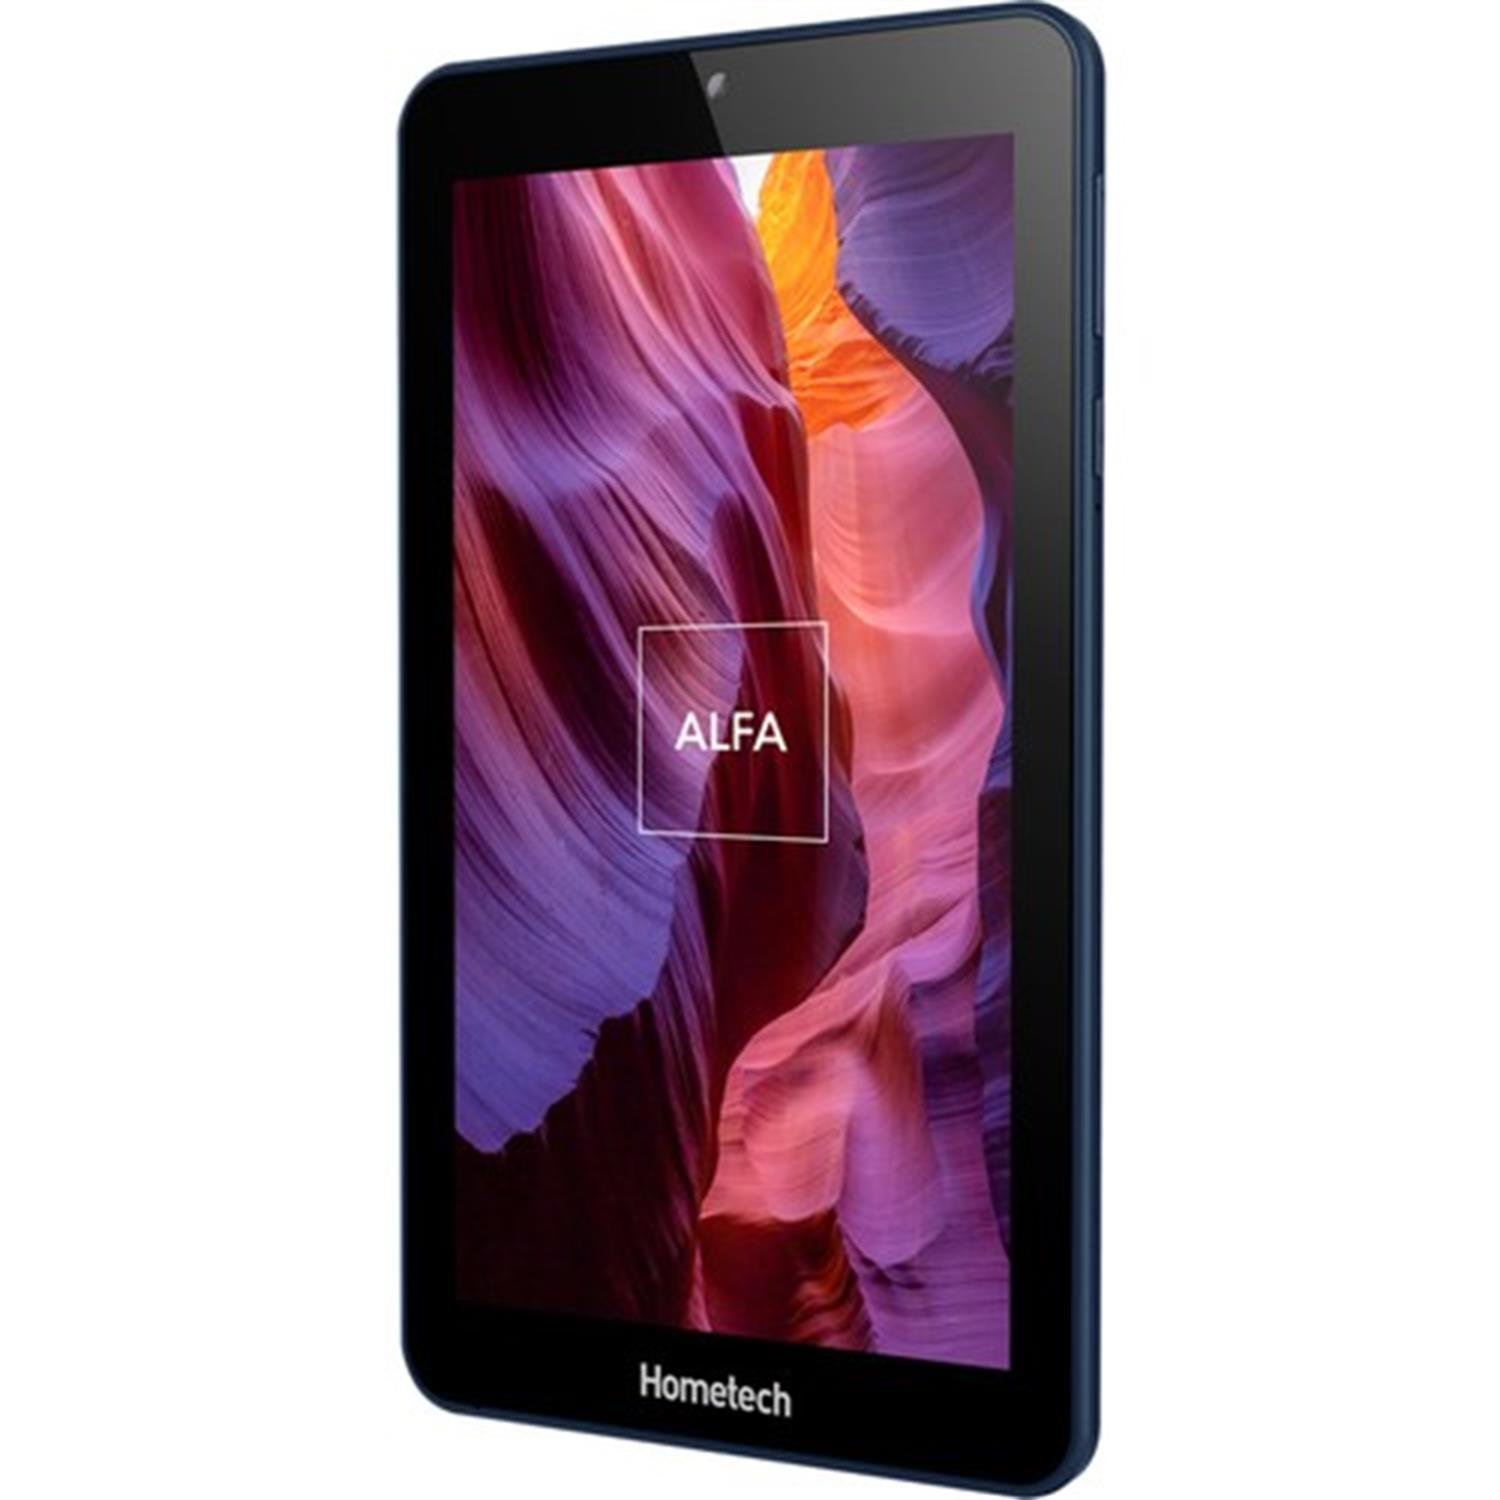 Hometech Alfa 7RA 7" Tablet - Hedef Avm